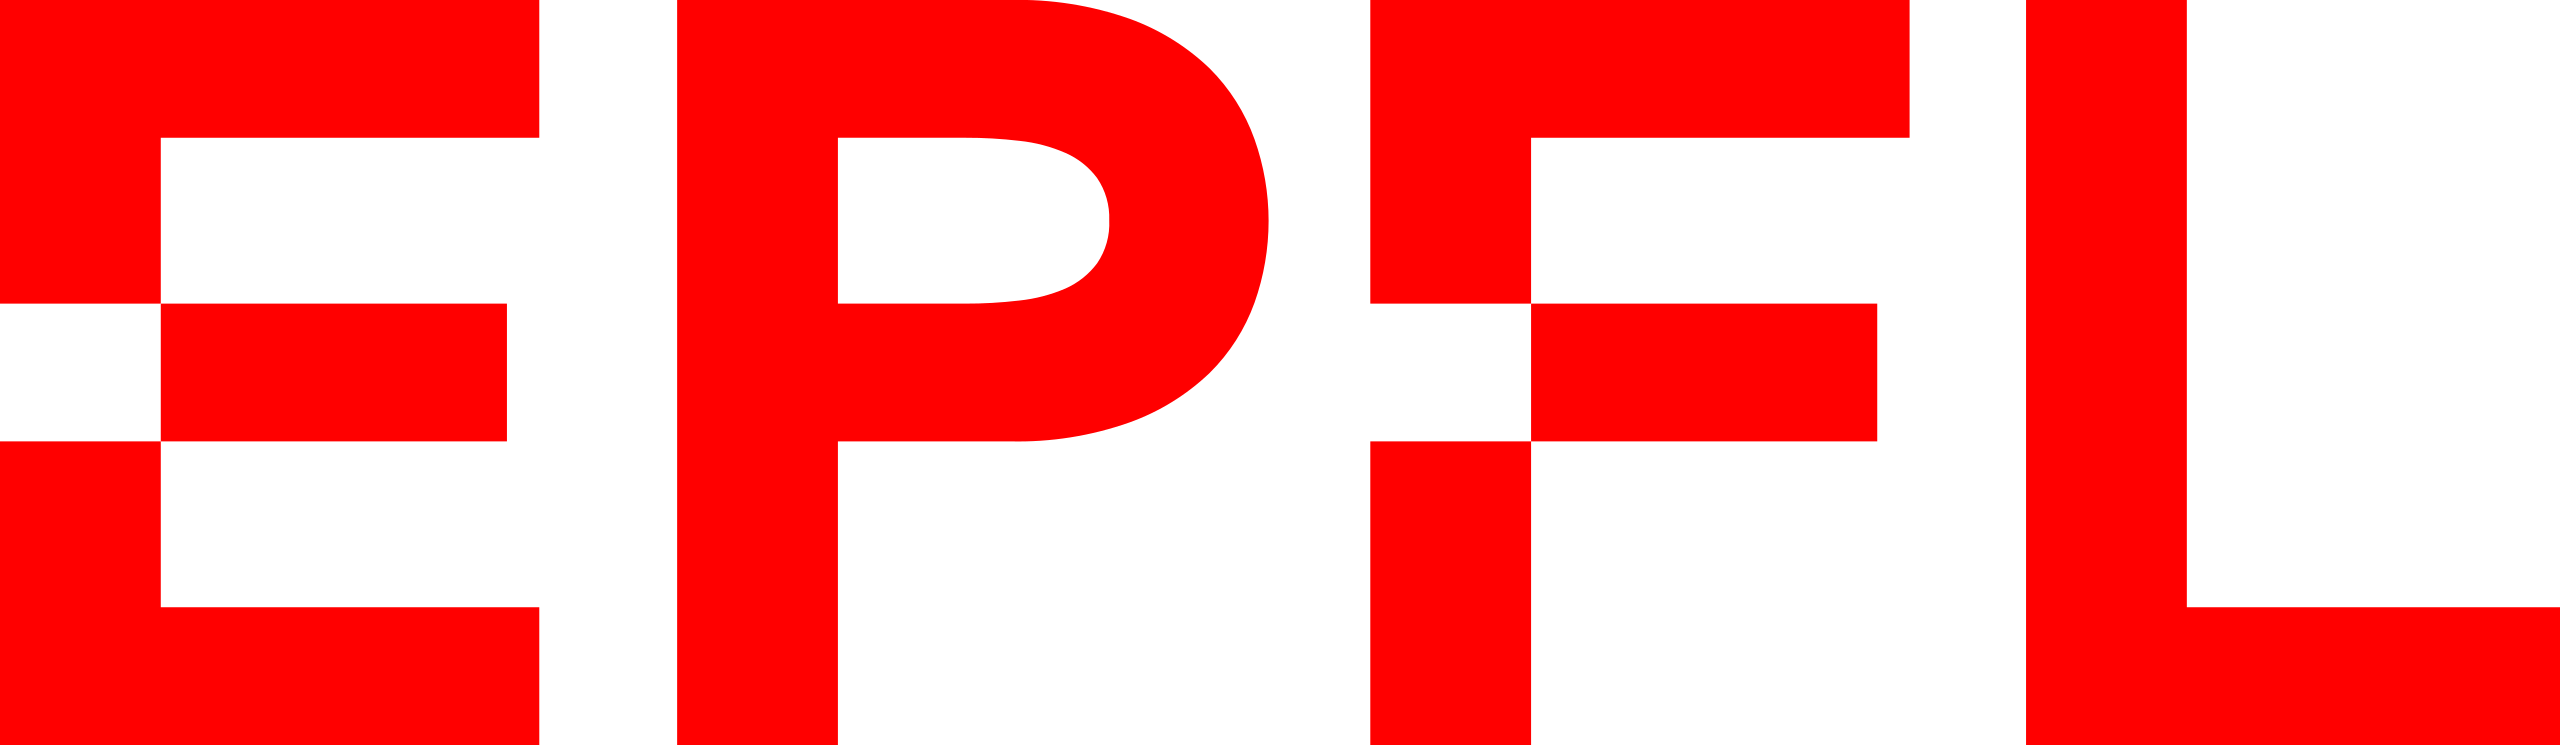 logo clients